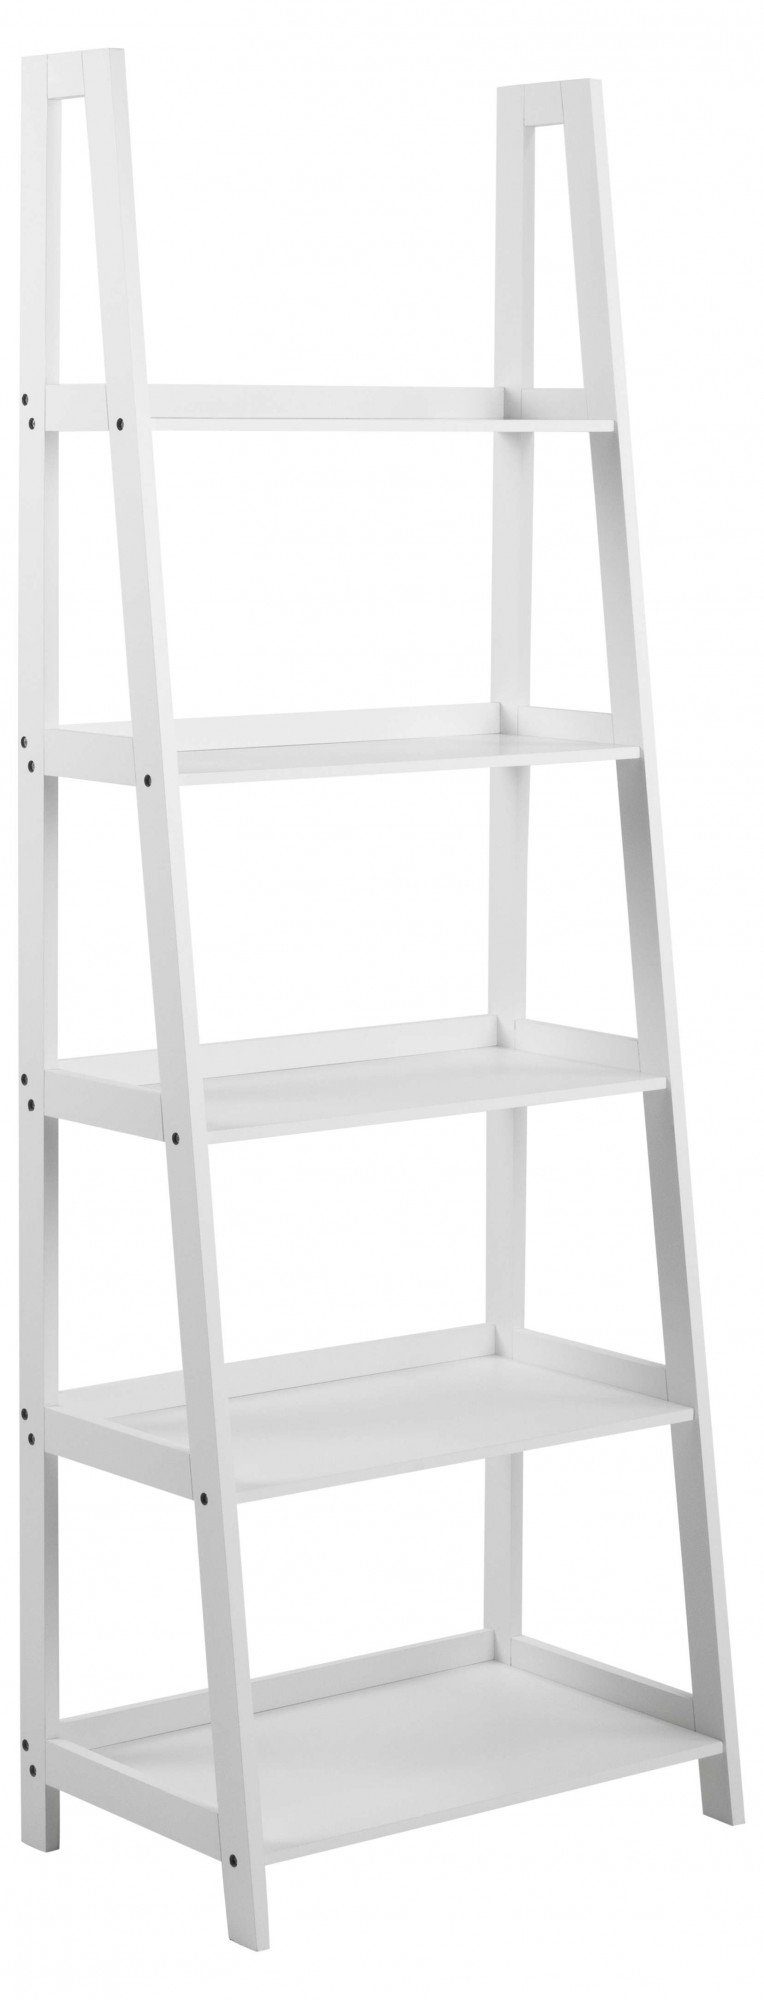 ACTONA GROUP Bücherregal Leiterregal in Weiss oder Schwarz, Standregal, lackiertem Holz, stufenförmig und mit 5 Einlegeböden